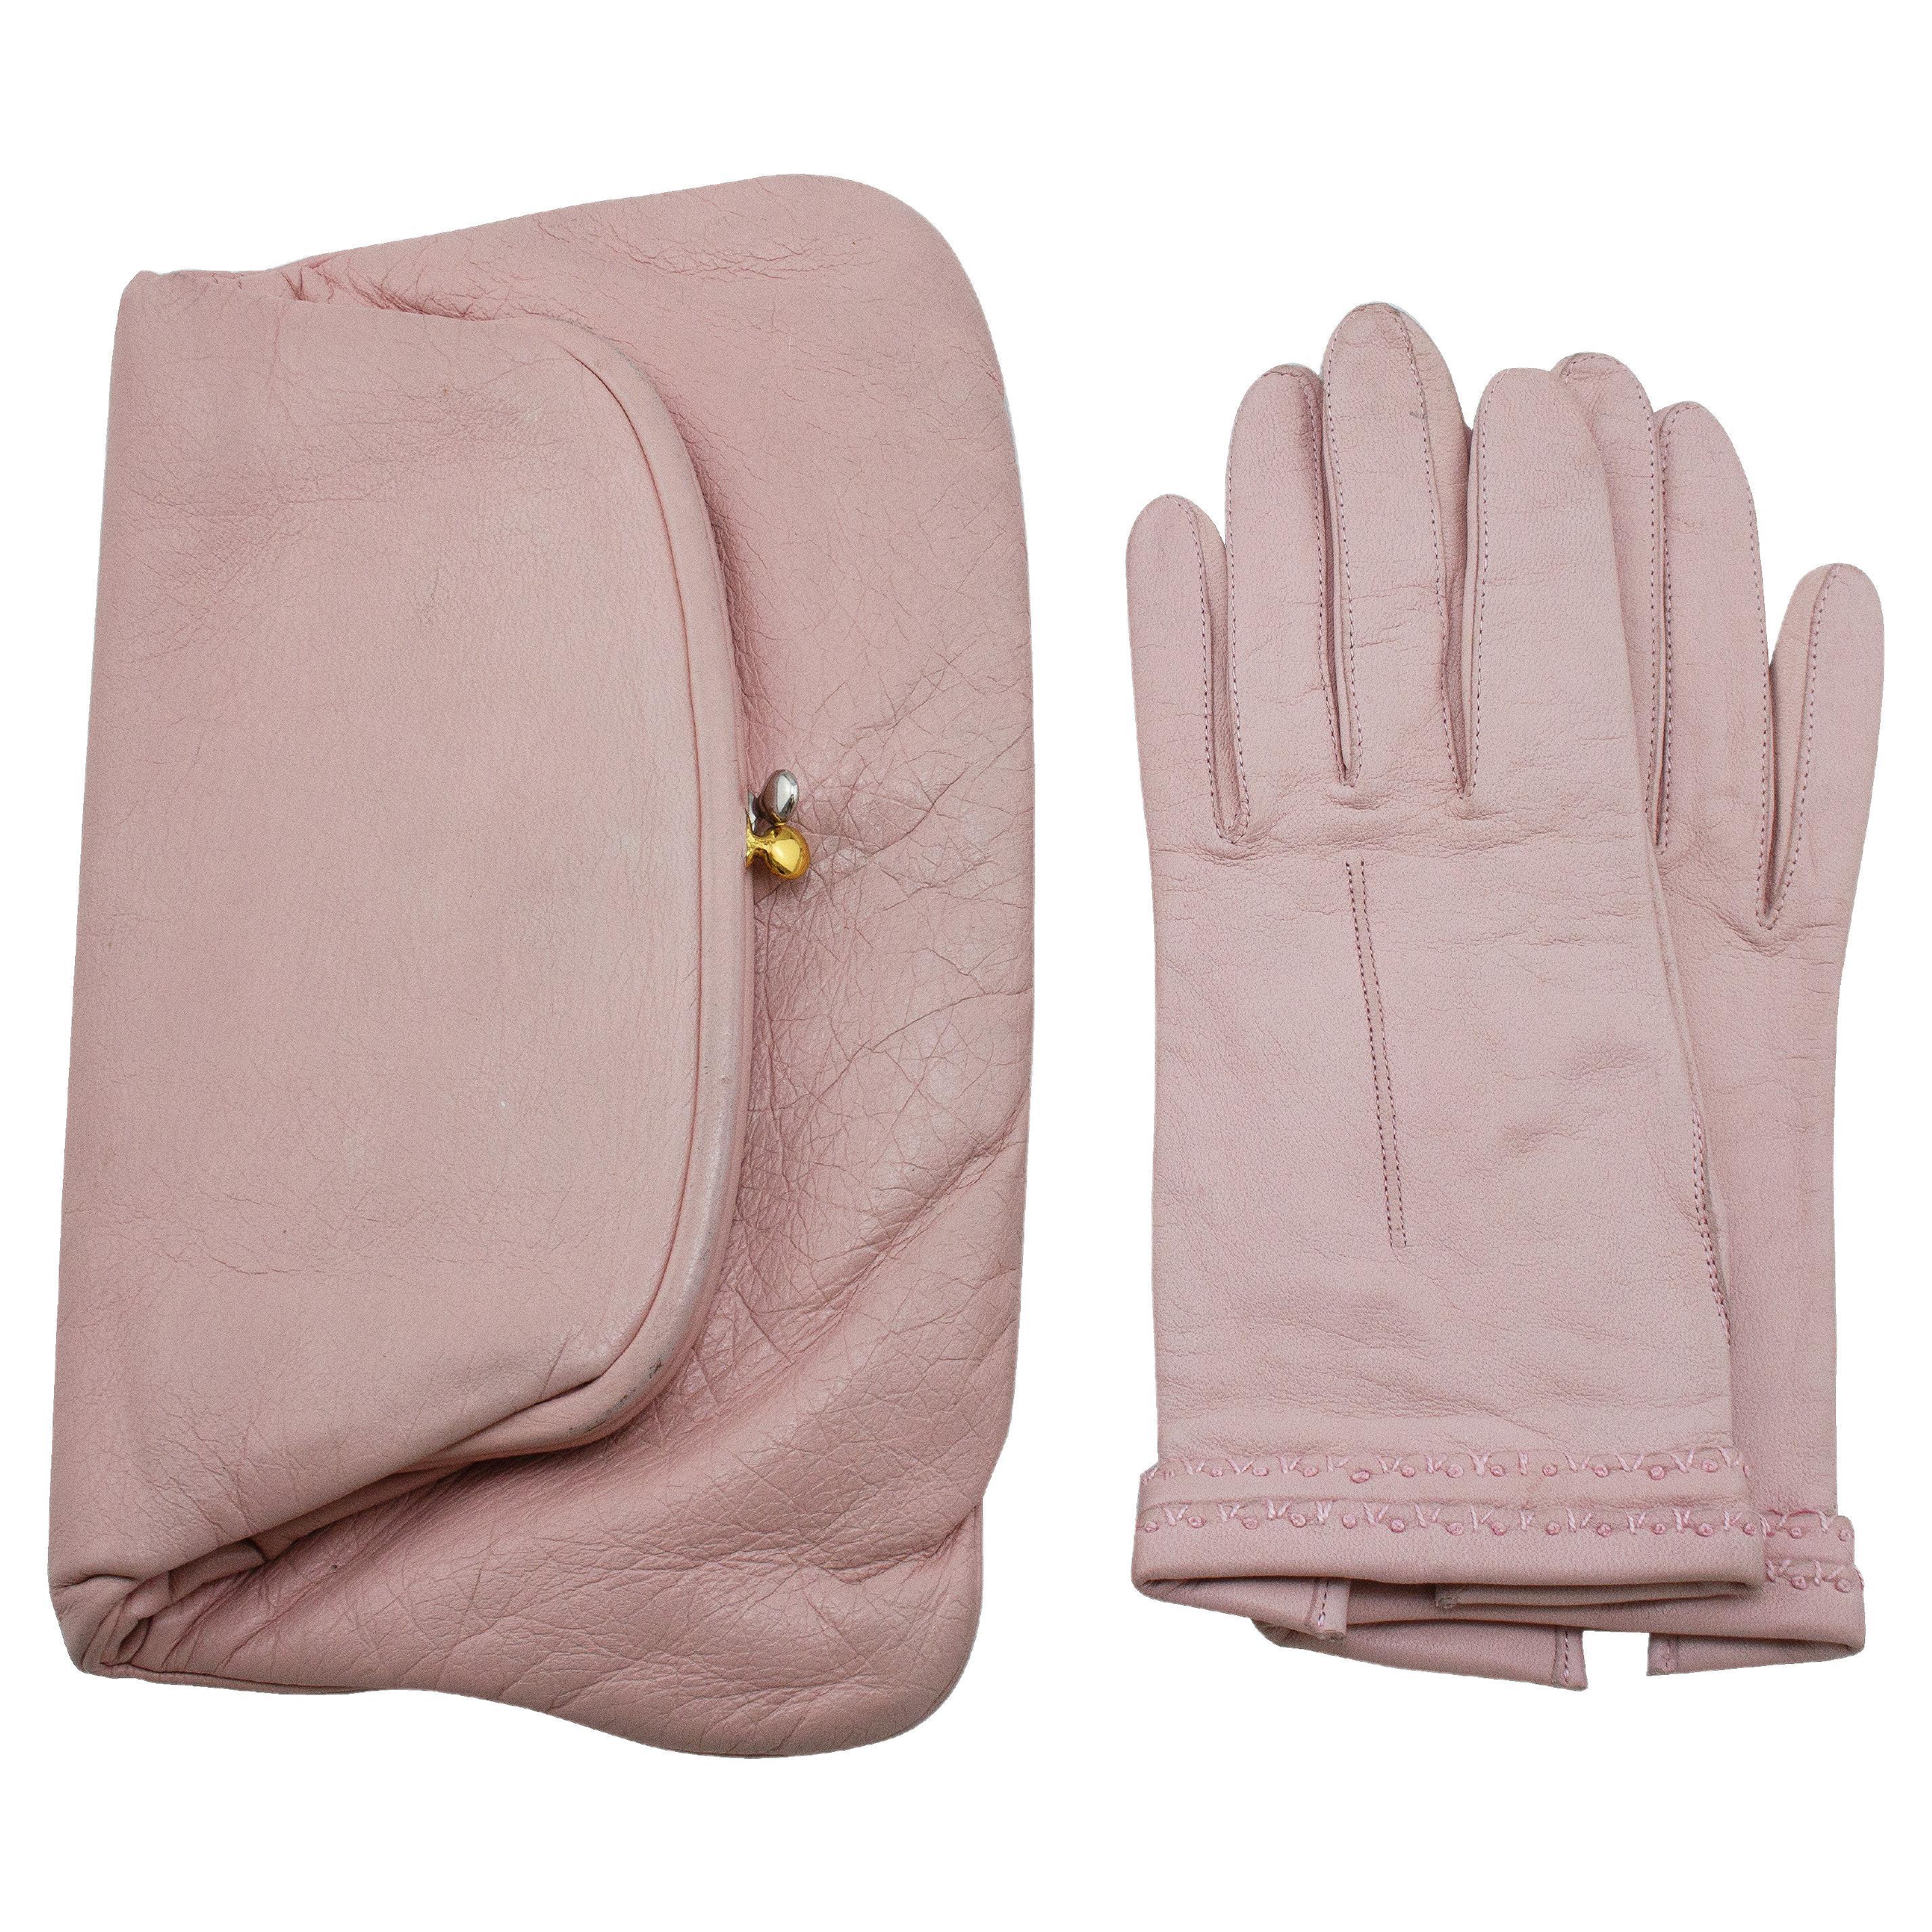 Pochette in pelle rosa Coblentz degli anni '50 con guanti di capretto abbinati